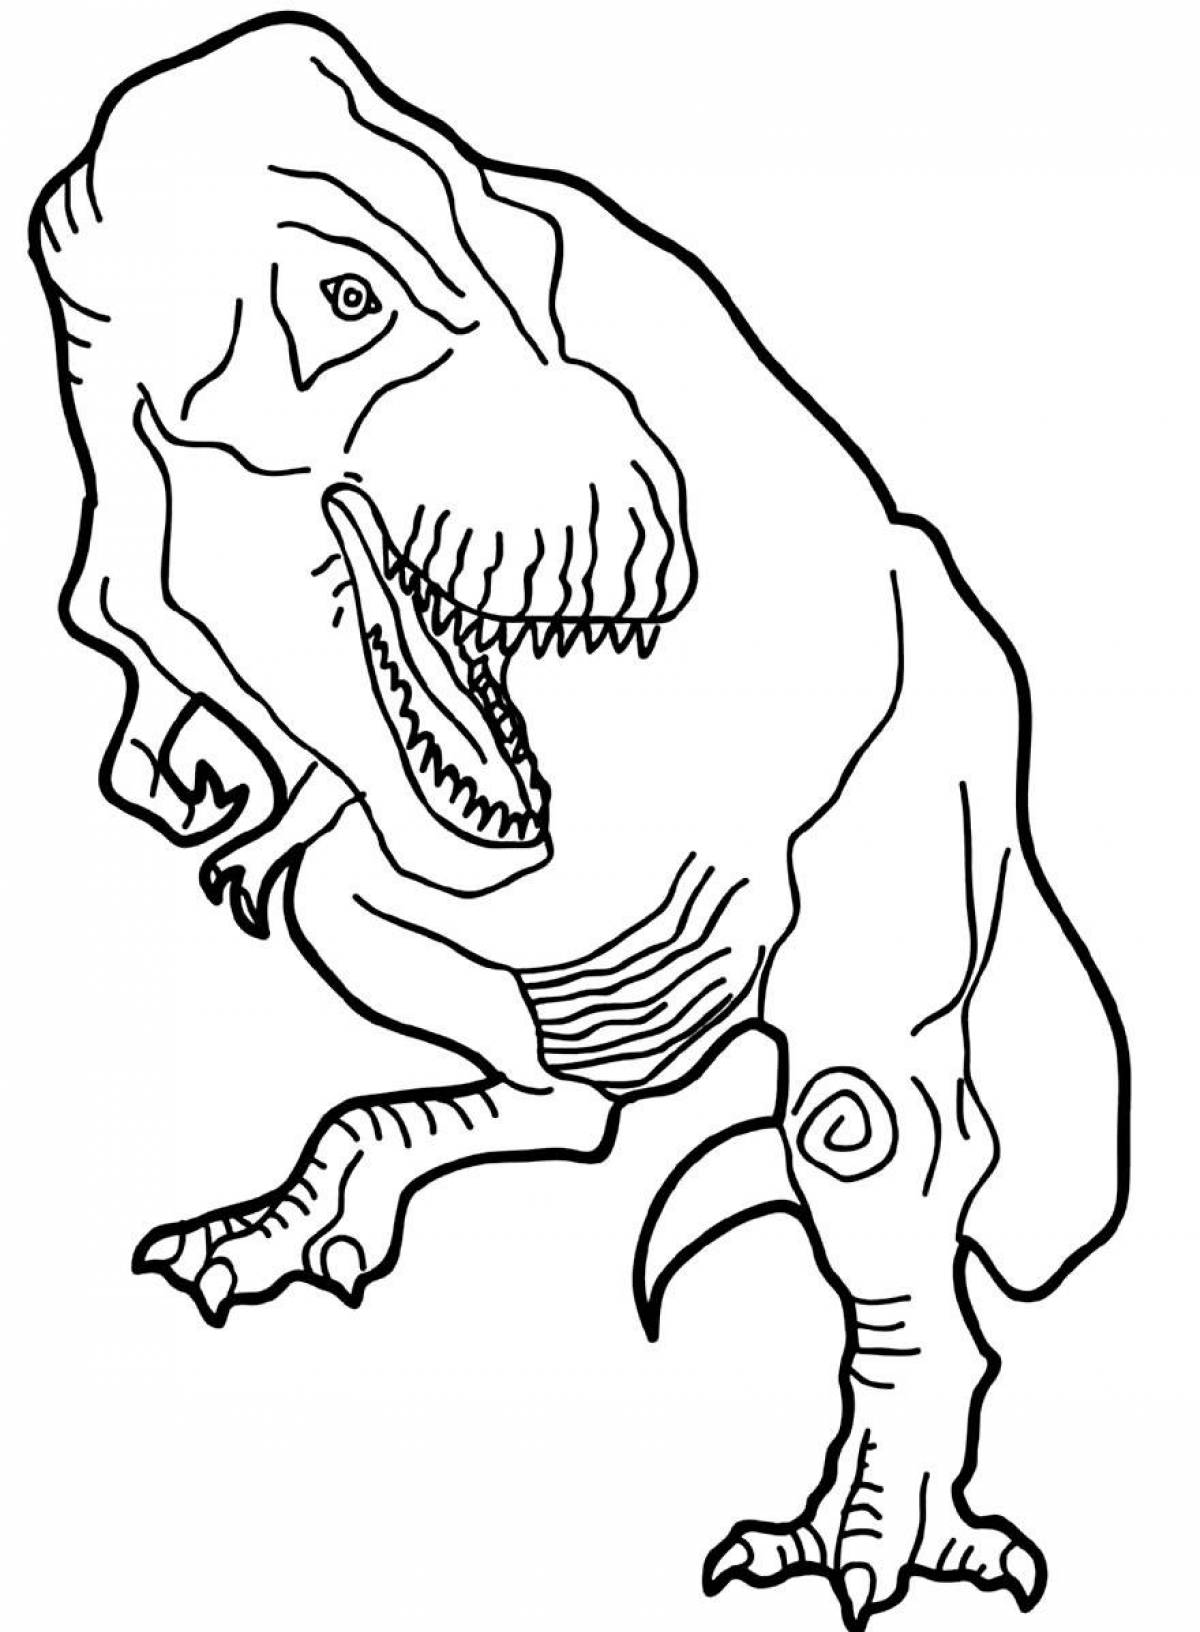 Ferocious tyrannosaurus rex coloring book